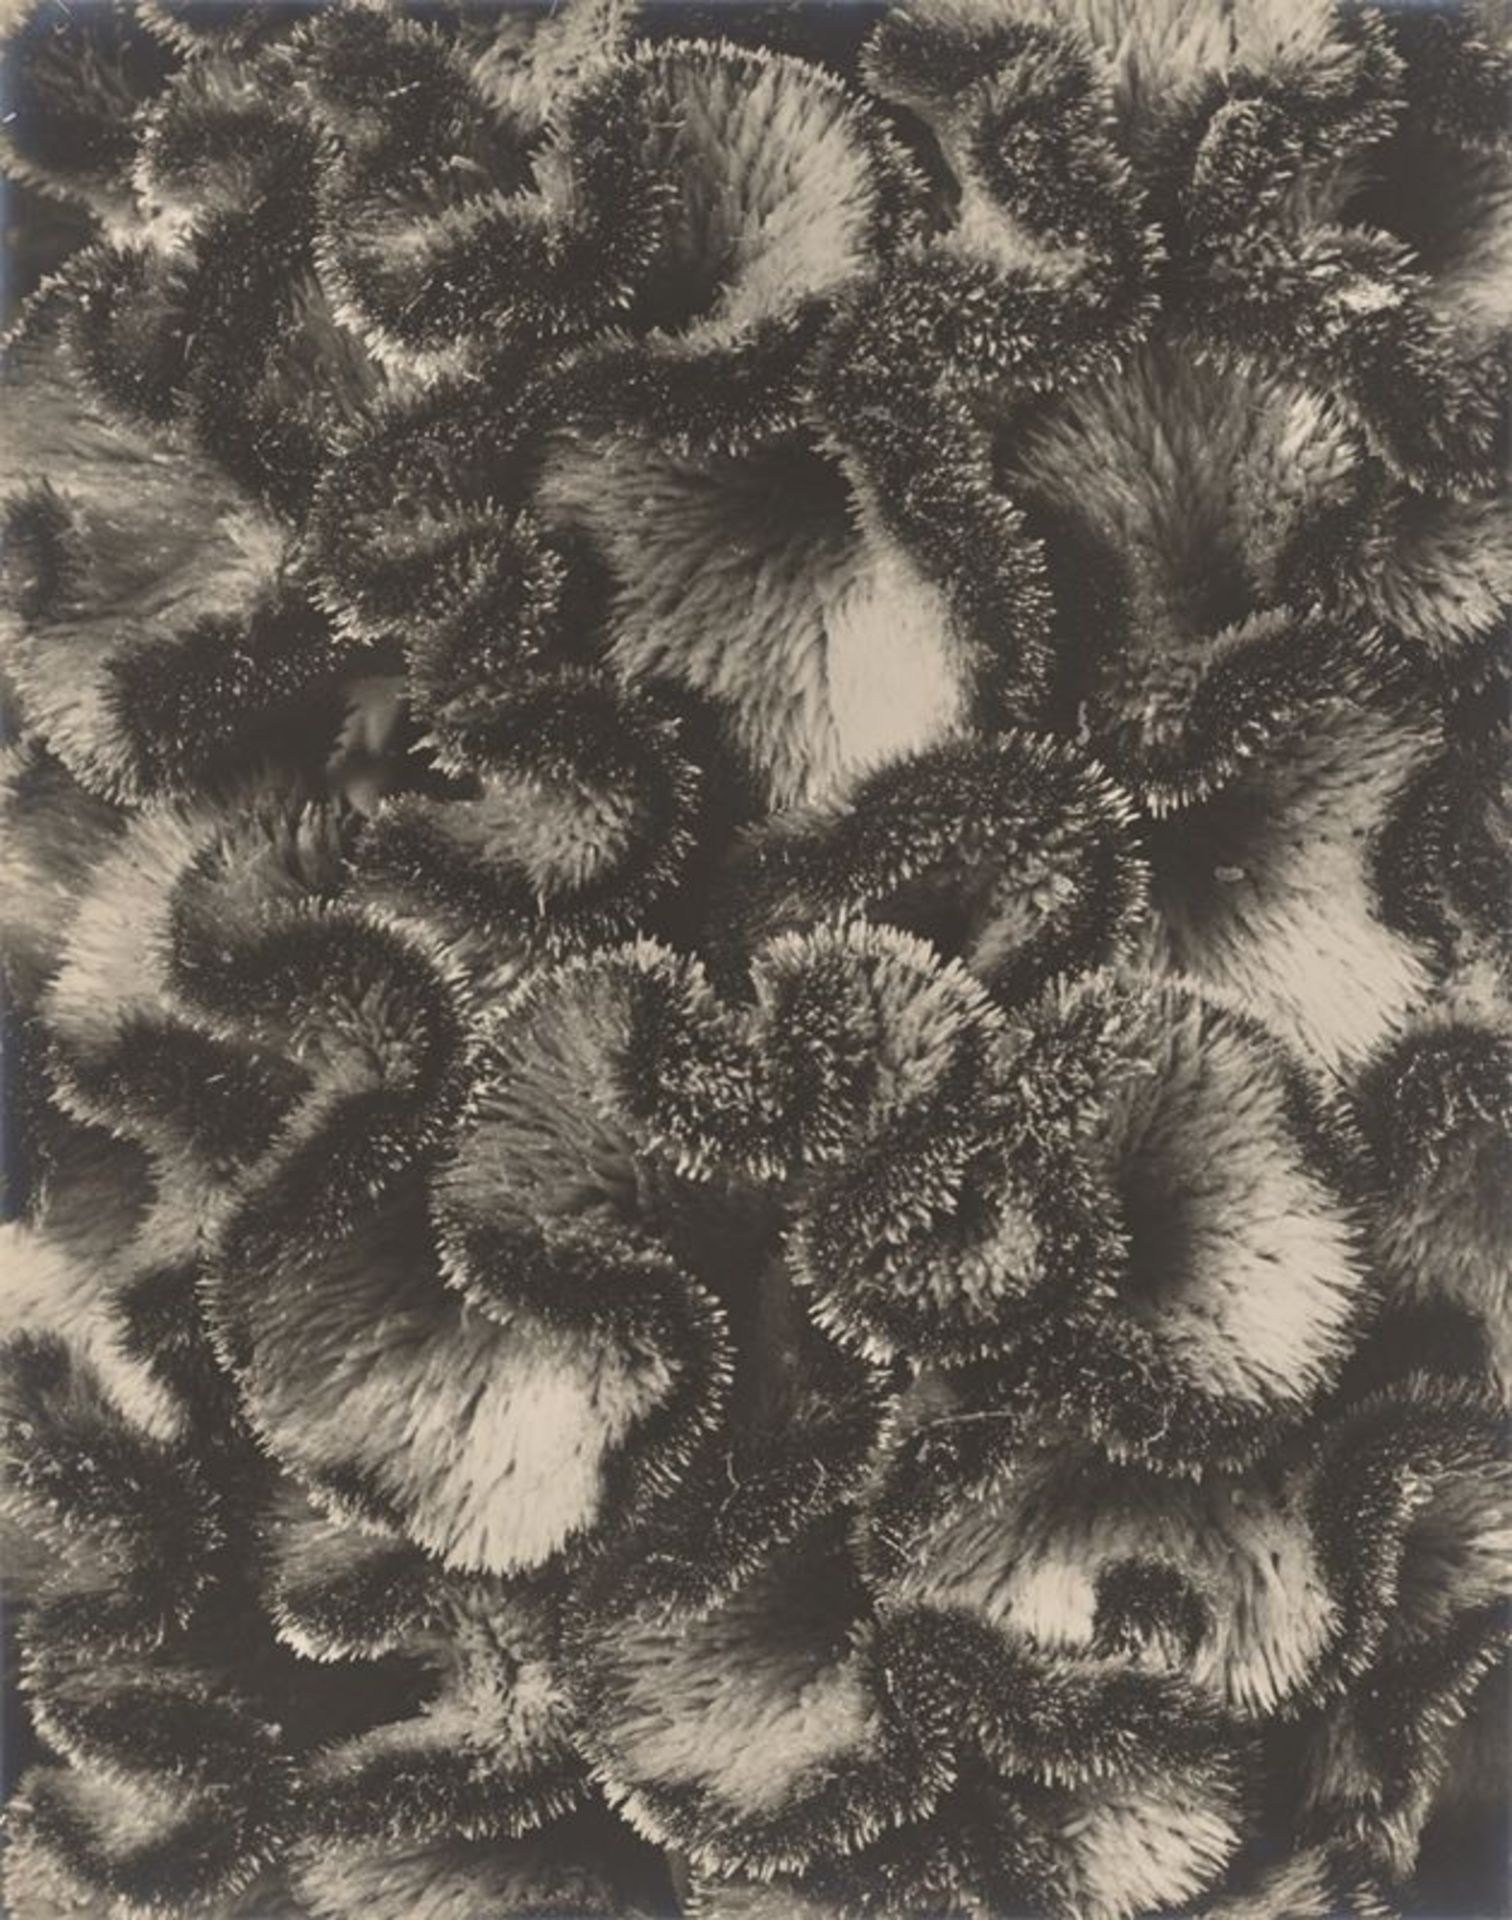 Karl Blossfeldt (Schielo 1865 – 1932 Berlin)Celosia cristata, Hahnenkamm, Teil eines